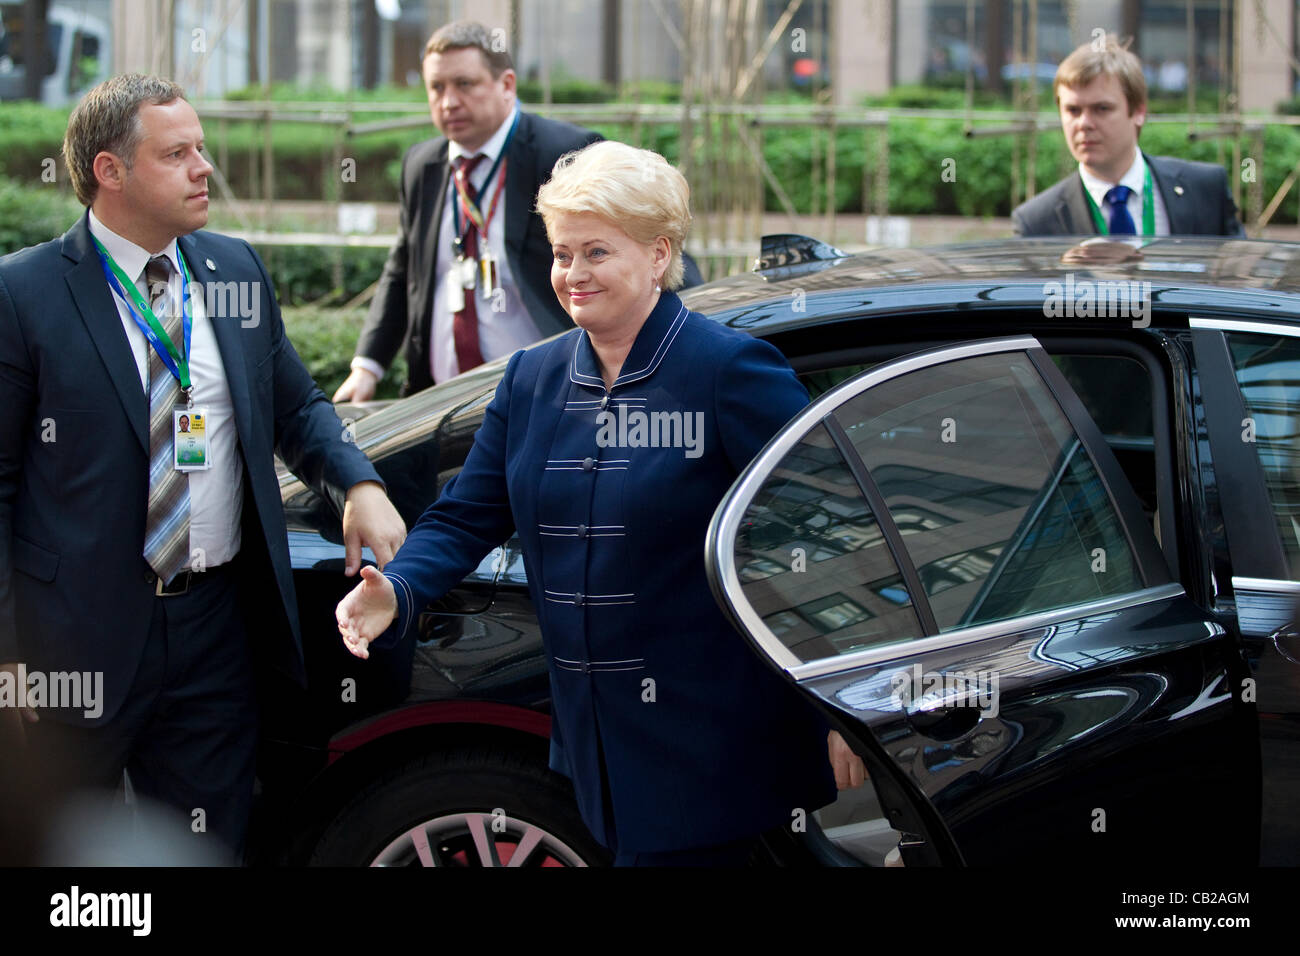 Consiglio europeo di Bruxelles, Belgio. 23.05.2012 Foto mostra la Dalla Grybauskaite, Presidente della Repubblica di Lituania, arrivando alla cena informale dei Capi di Stato o di governo per le nazioni membro dell'UE, Bruxelles, Belgio. Foto Stock